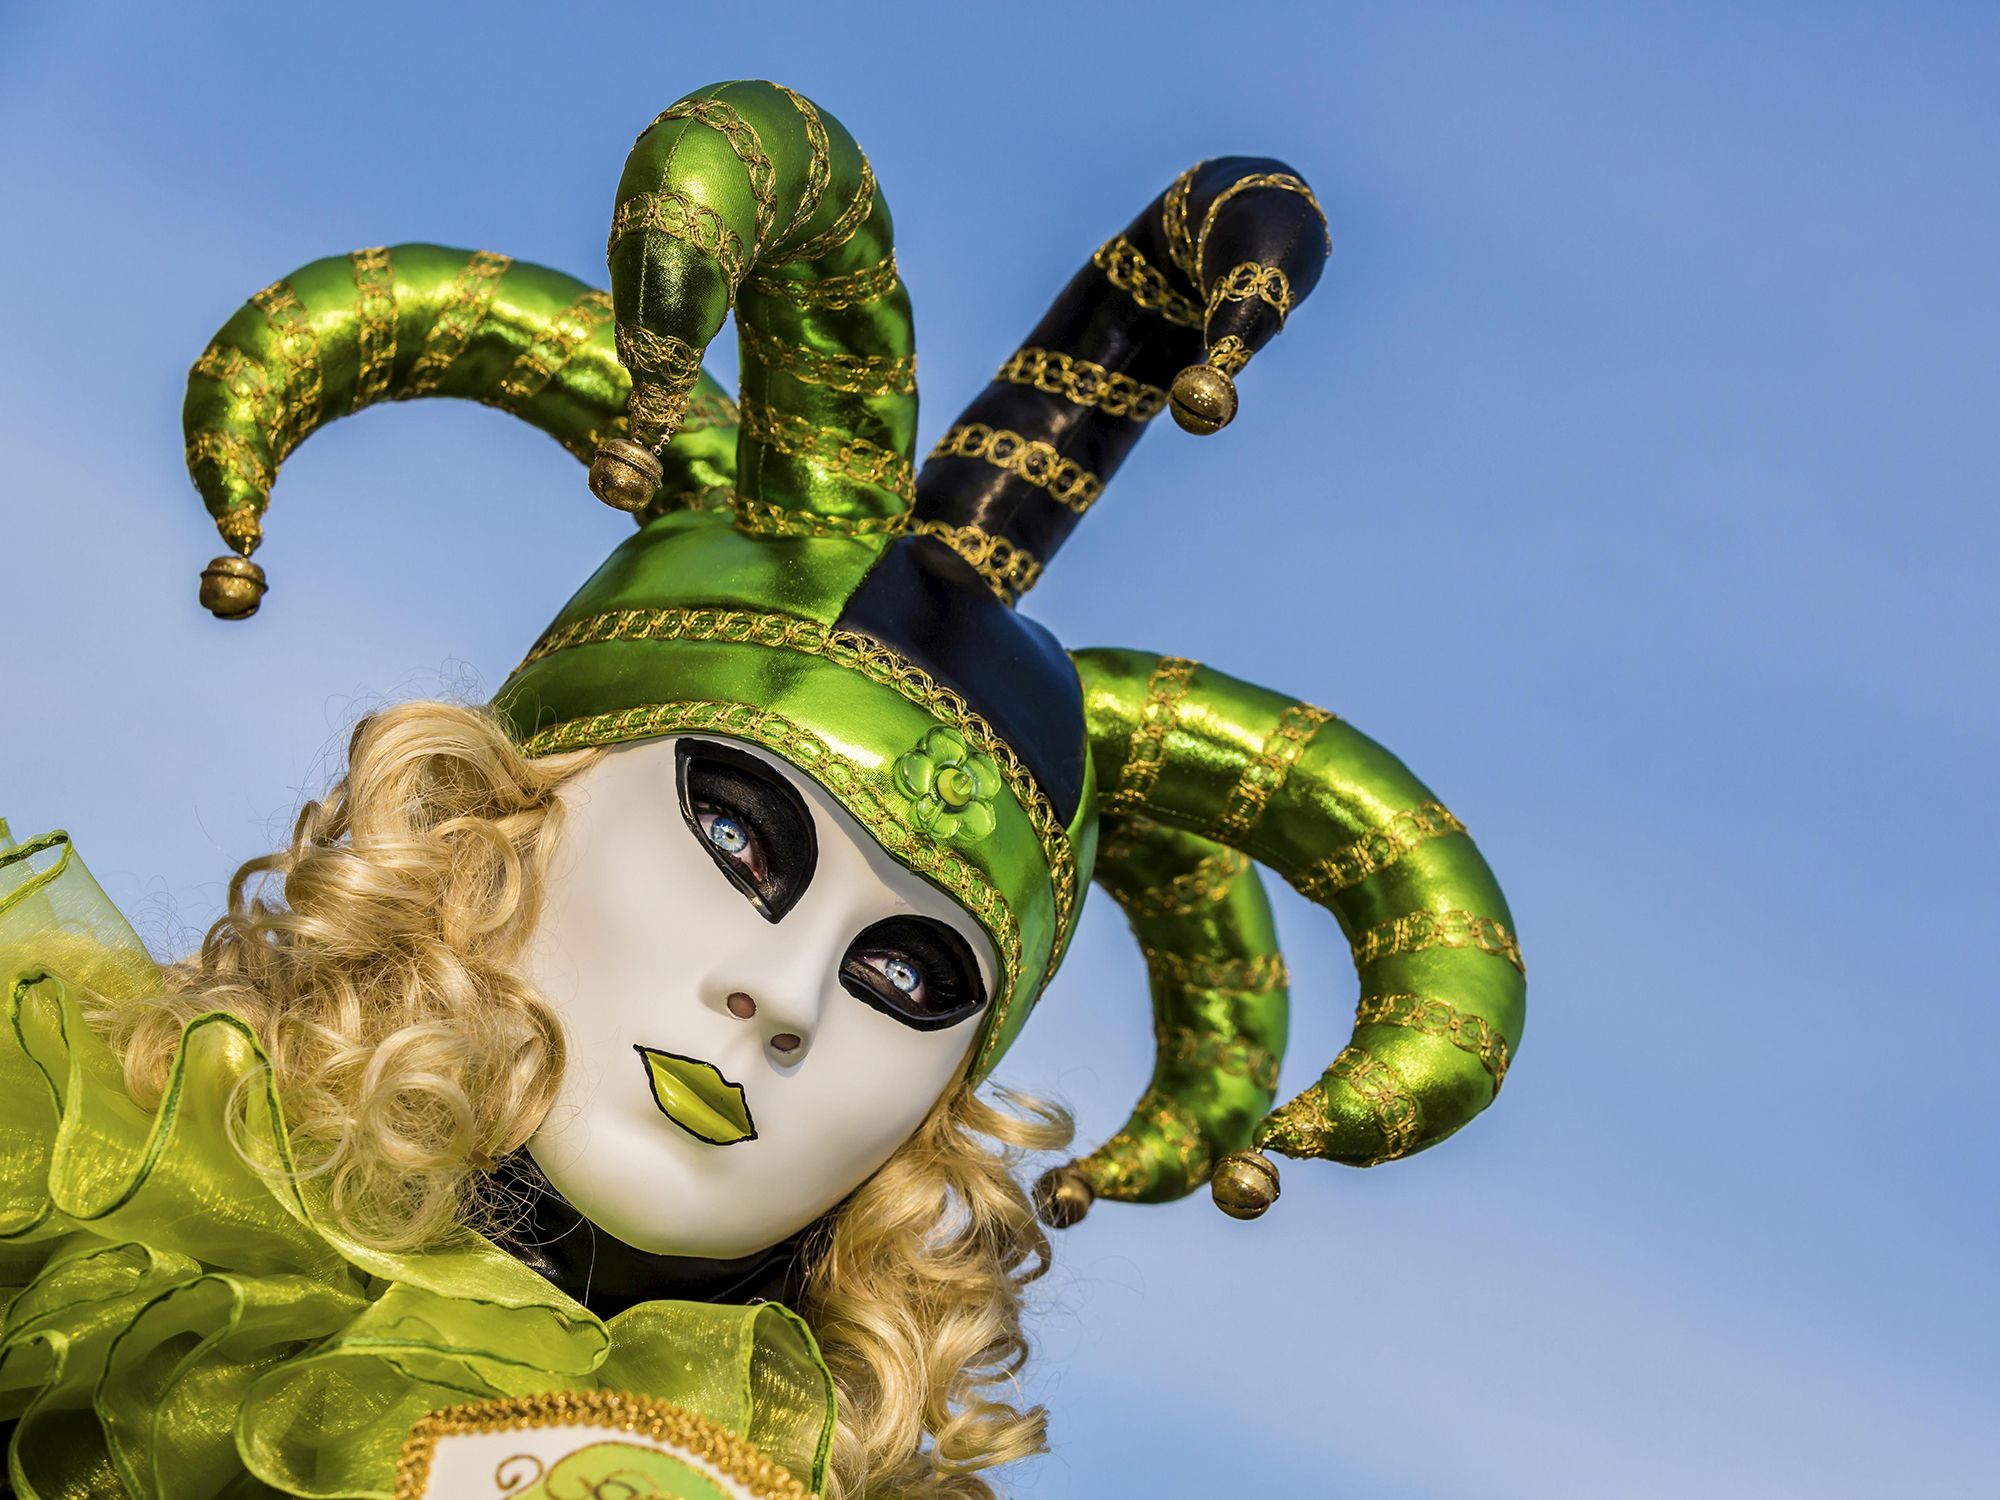 patio de recreo destacar acuerdo En qué se inspiran las máscaras del carnaval de Venecia? - Quo